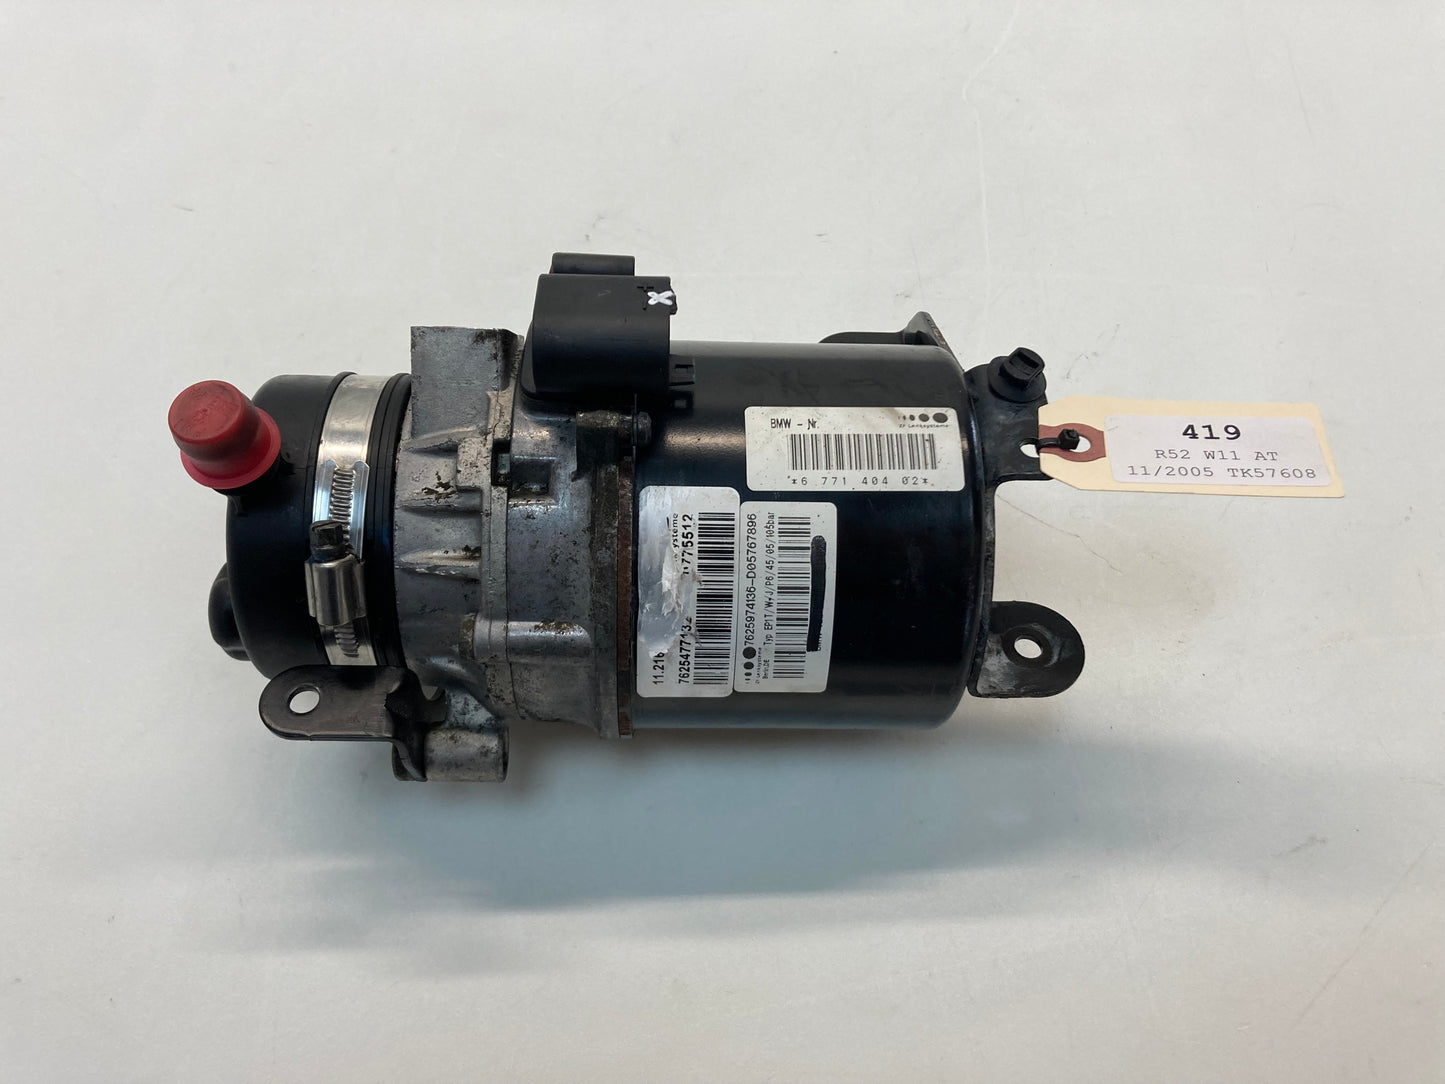 Mini Cooper Power Steering Pump With Broken Plug 32416778424 02-08 R50 R52 R53 419